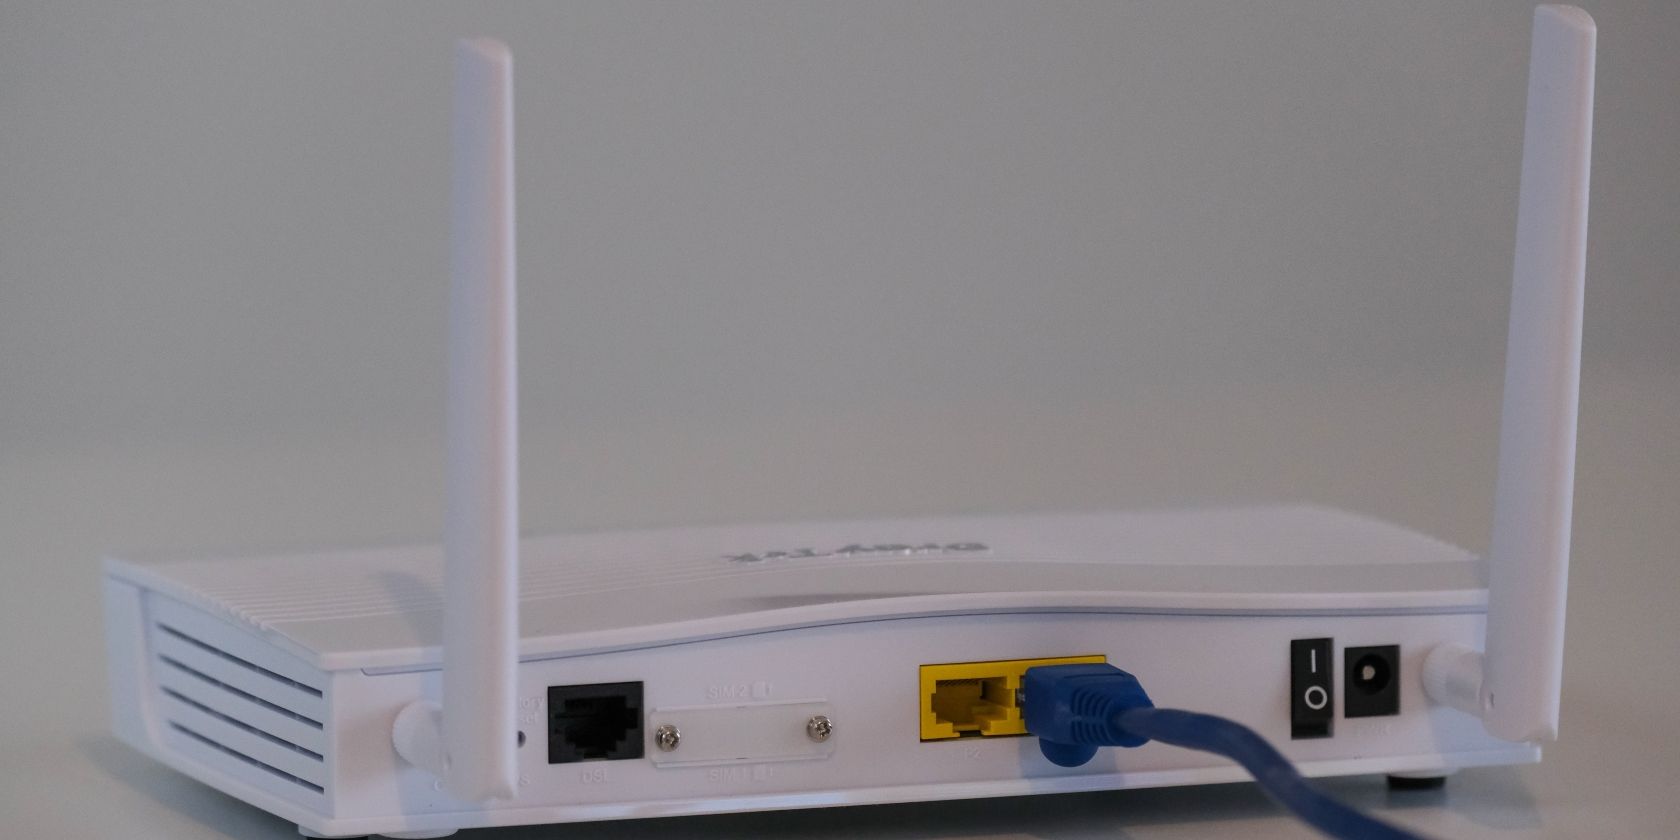 Routeur Internet avec câble sur une surface blanche